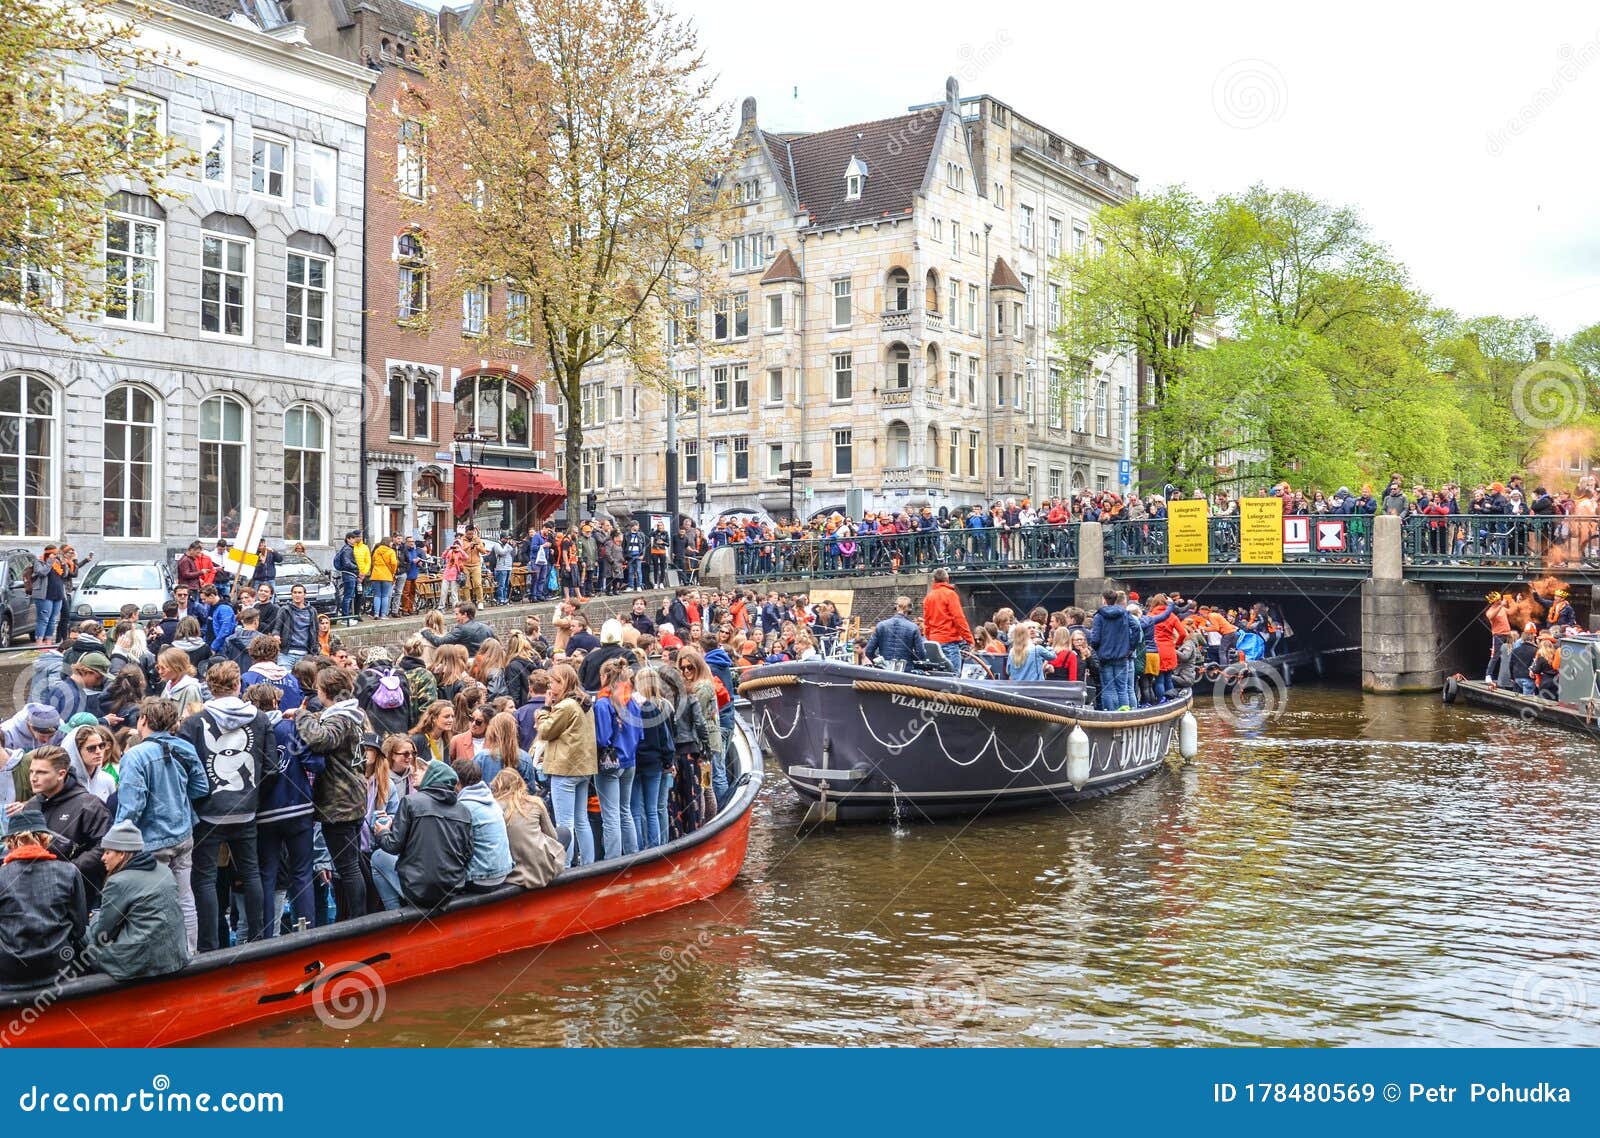 King's Day Koningsdag on April 27 in the Netherlands